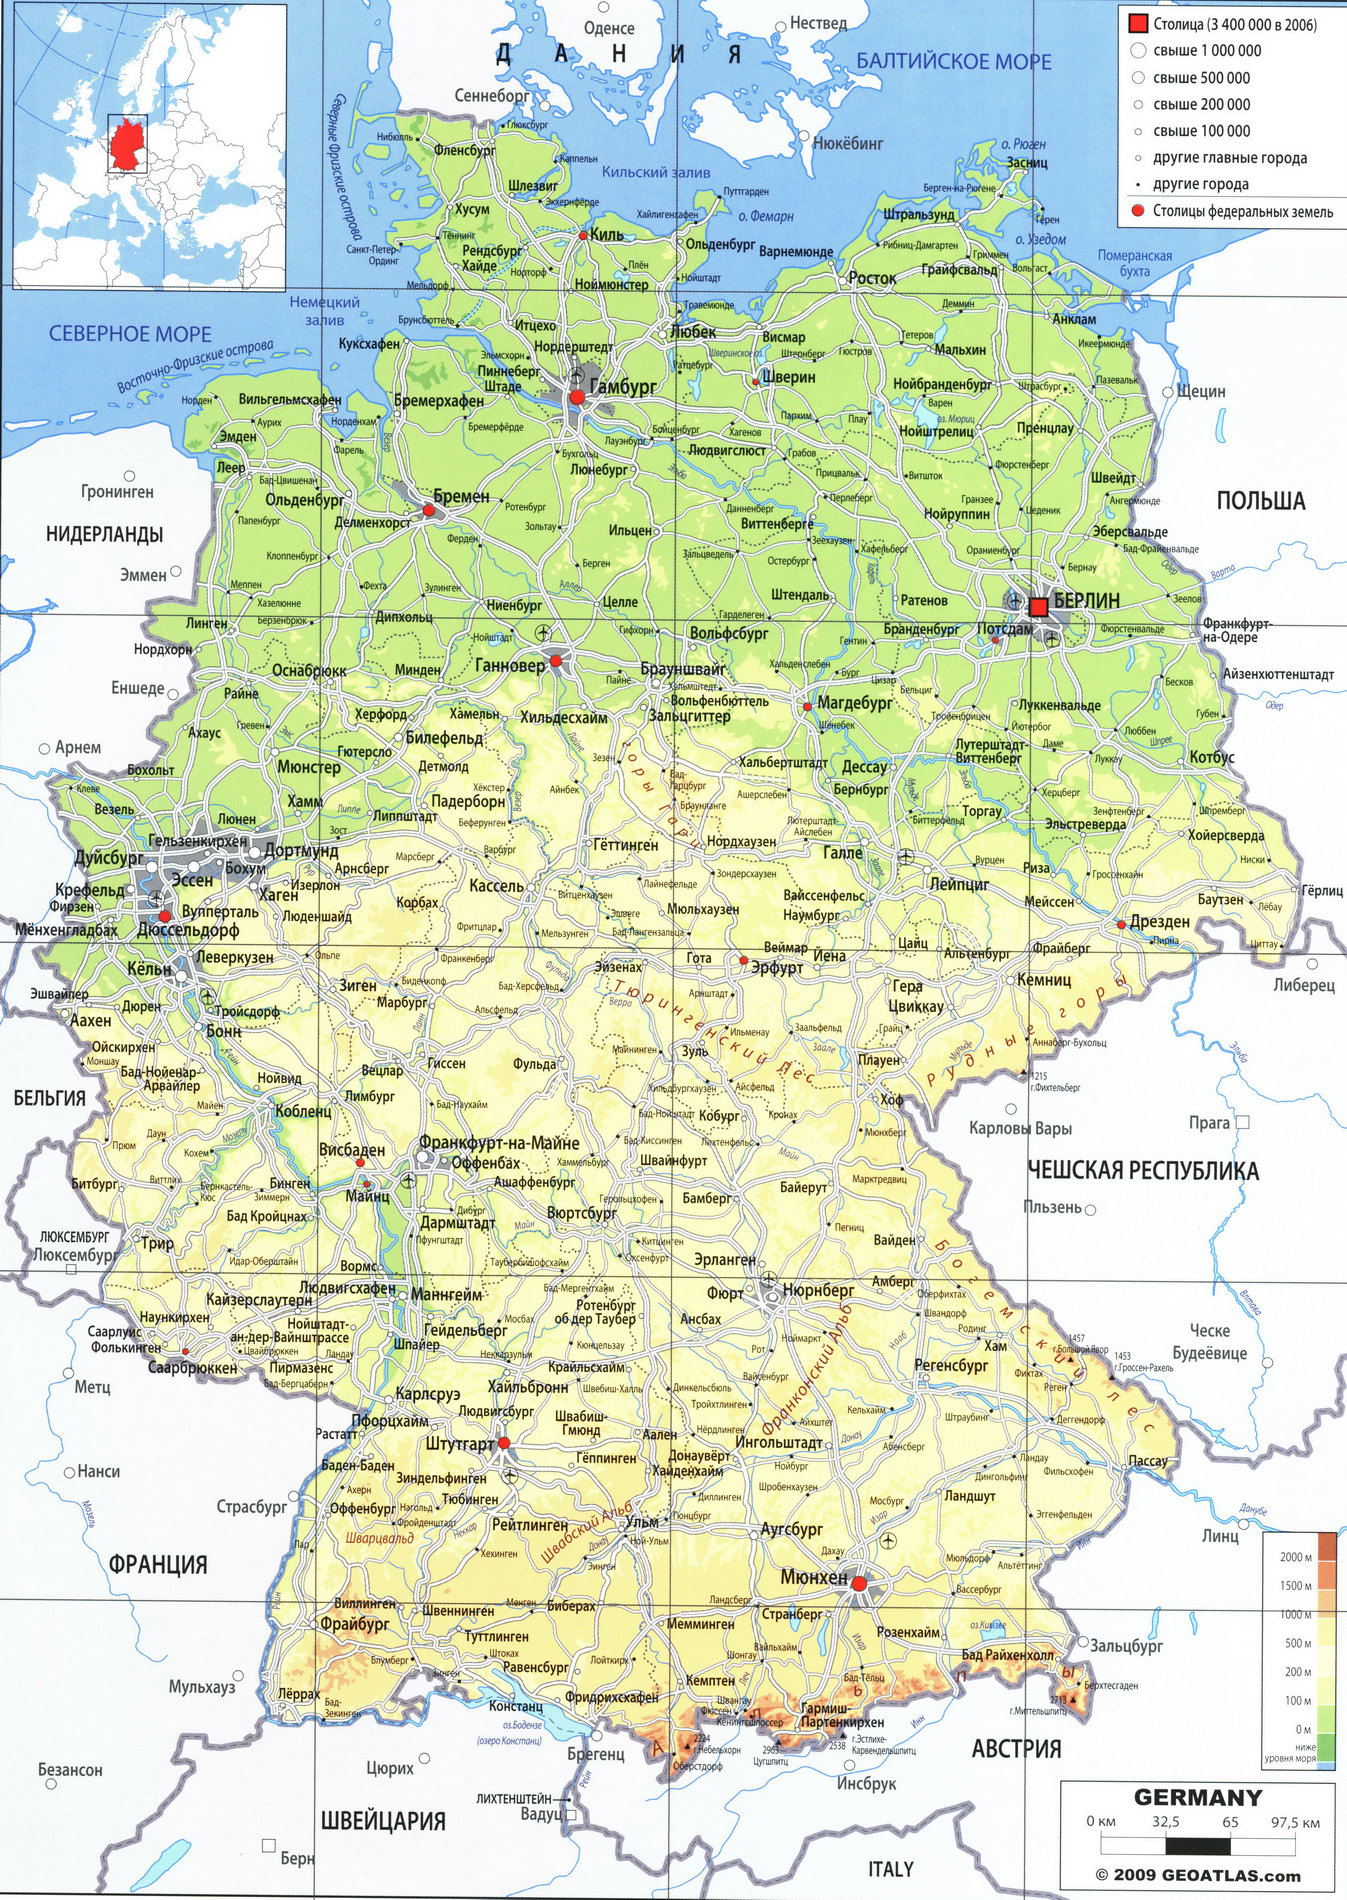 Германия карта на русском языке